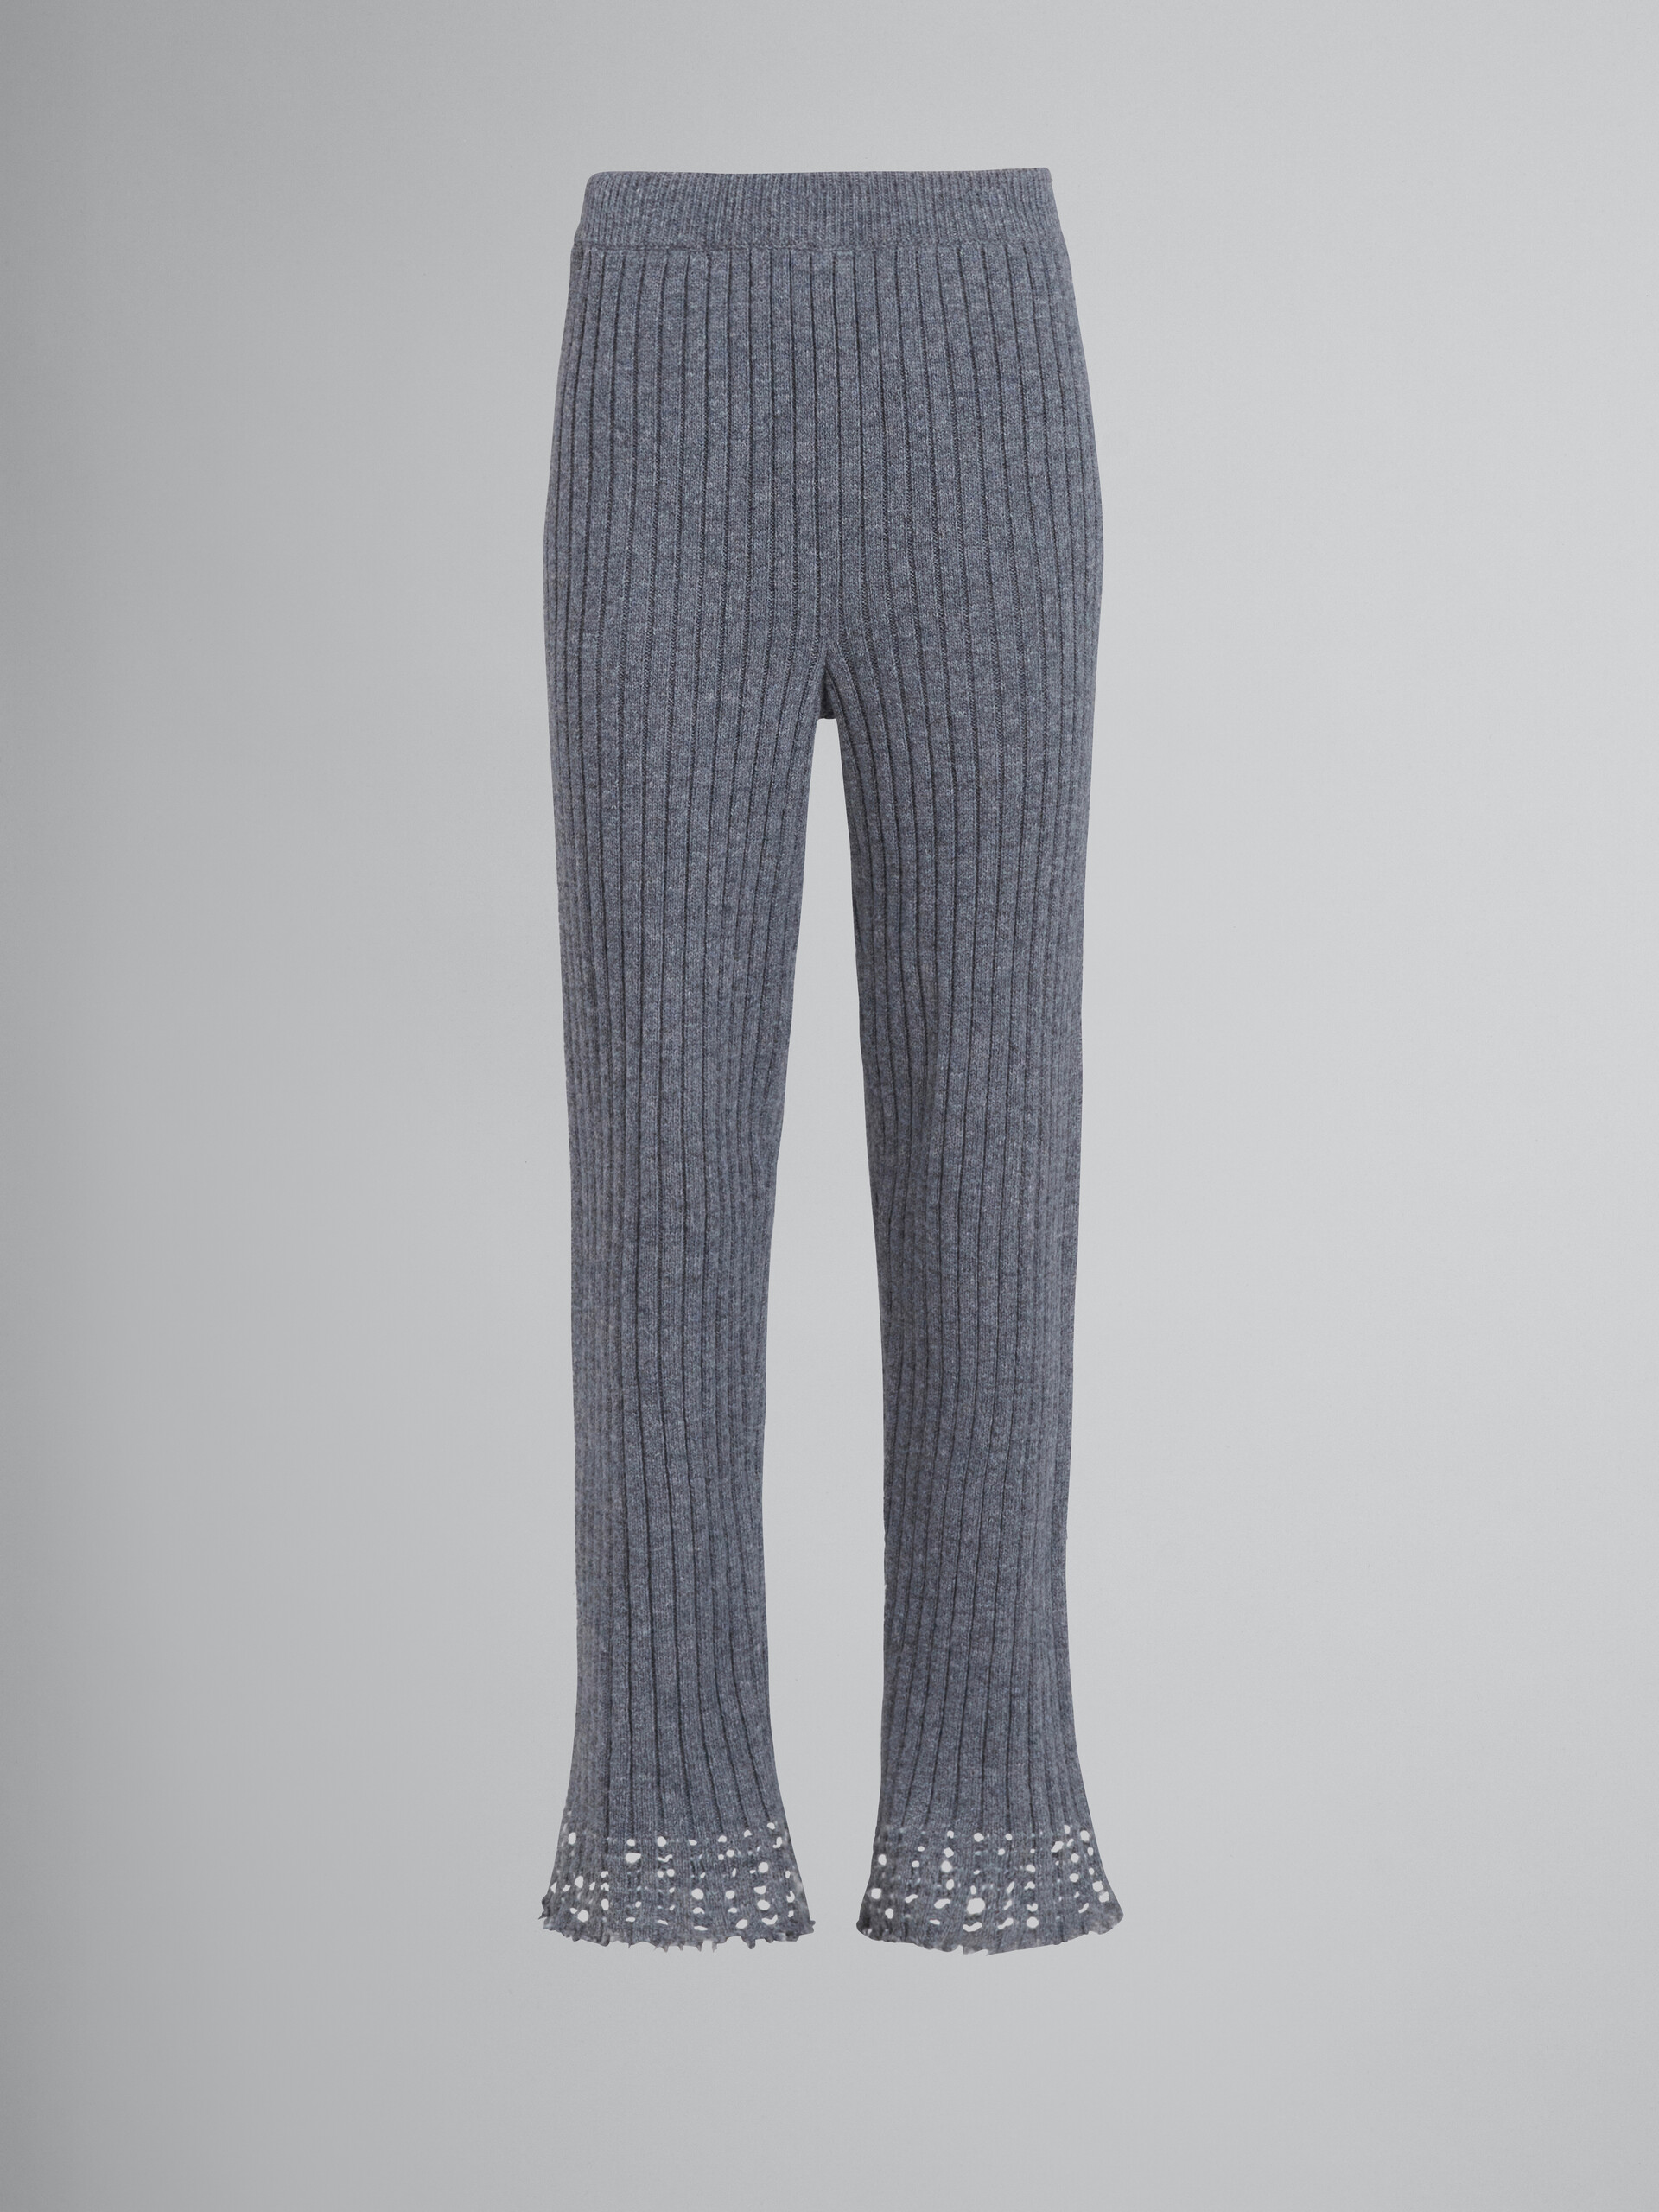 Grey knitted wool leggings - Pants - Image 1